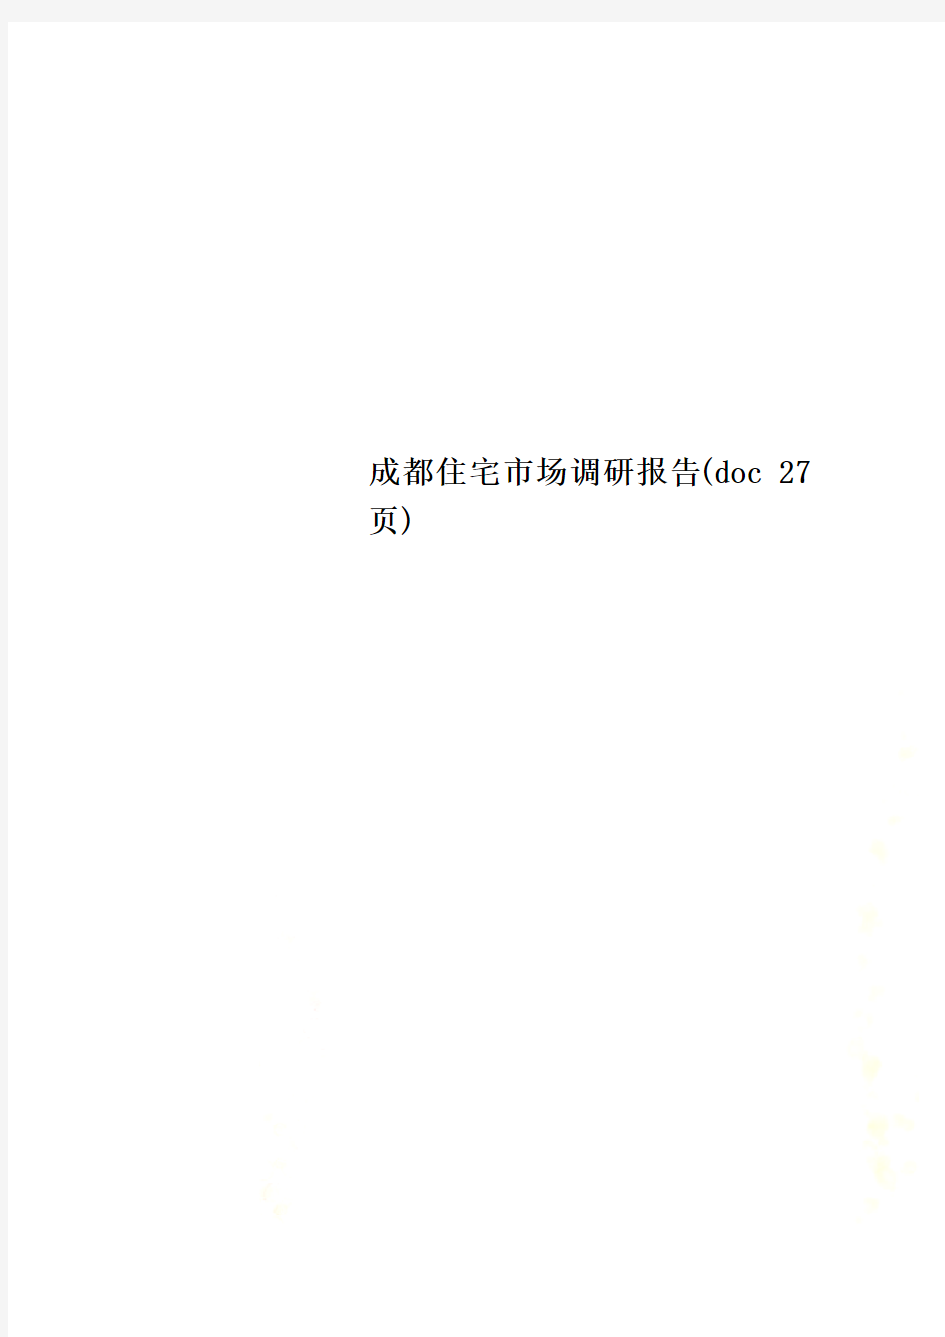 成都住宅市场调研报告(doc 27页)_New